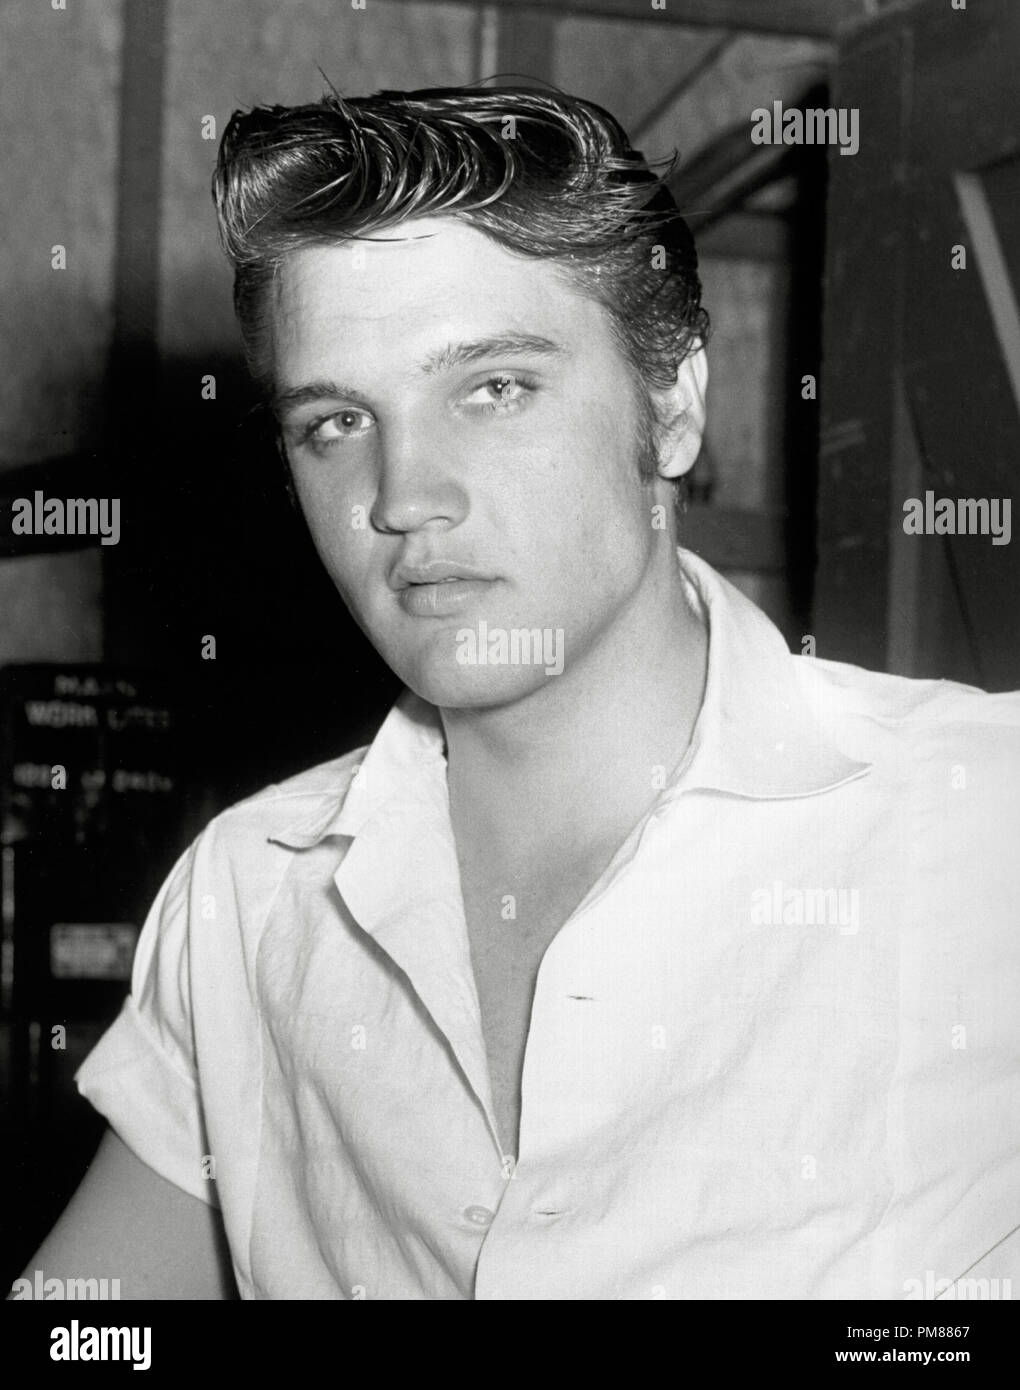 (Archivage classique du cinéma - Rétrospective) Elvis Presley Elvis Presley, vers 1956. Référence #  31616 Fichier 015THA Banque D'Images